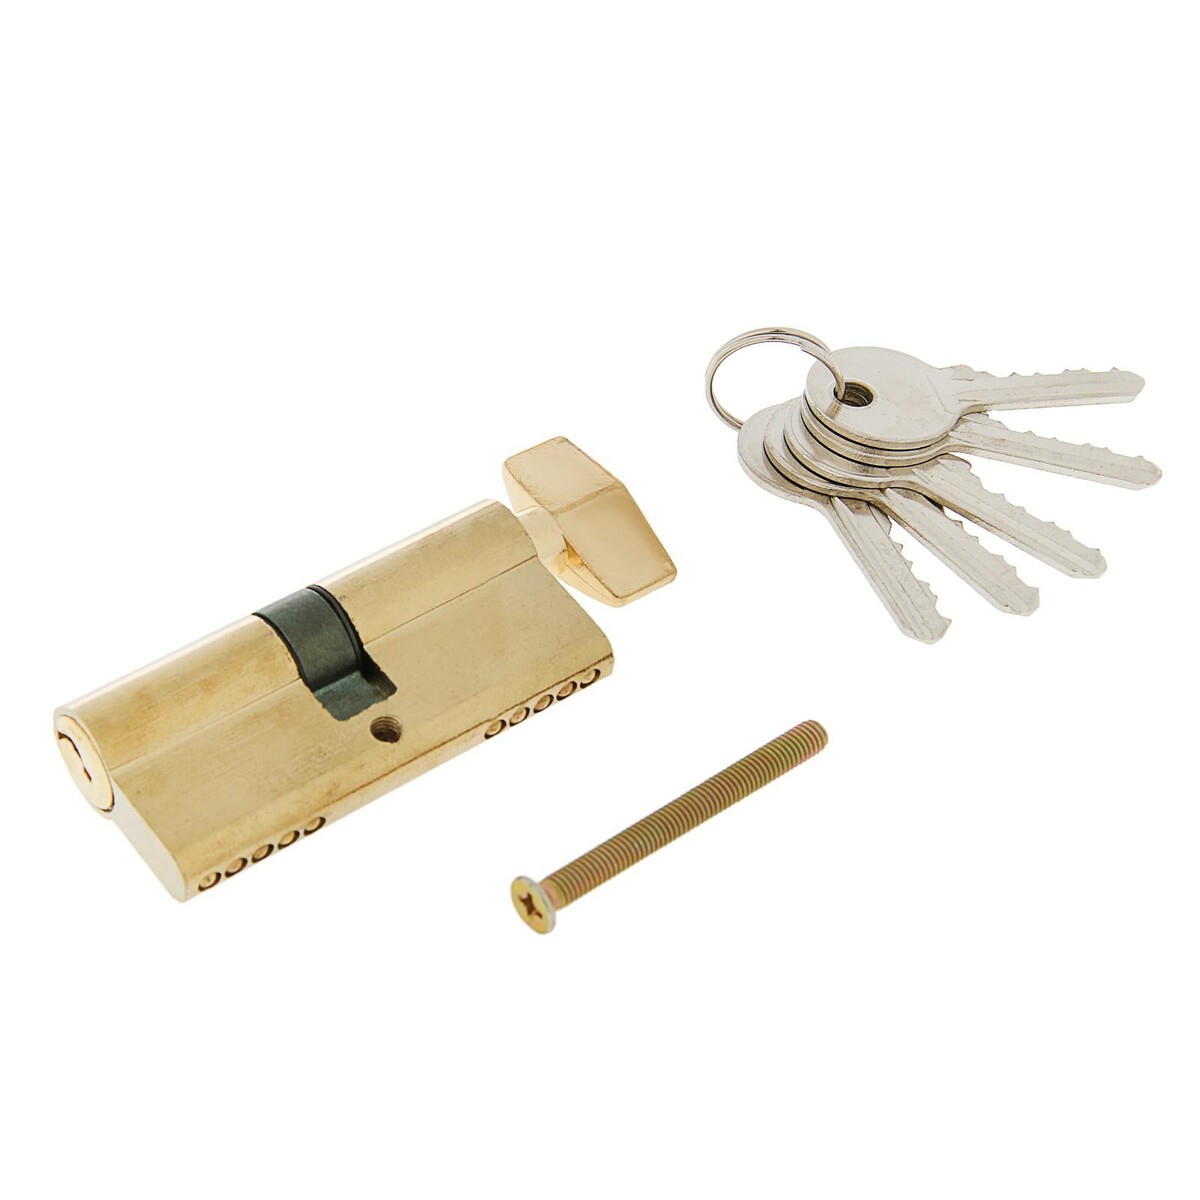 Цилиндровый механизм, 70 мм, с вертушкой, английский ключ, 5 ключей, цвет золото замок навесной аллюр вс1ч 360 цилиндровый 5 ключей